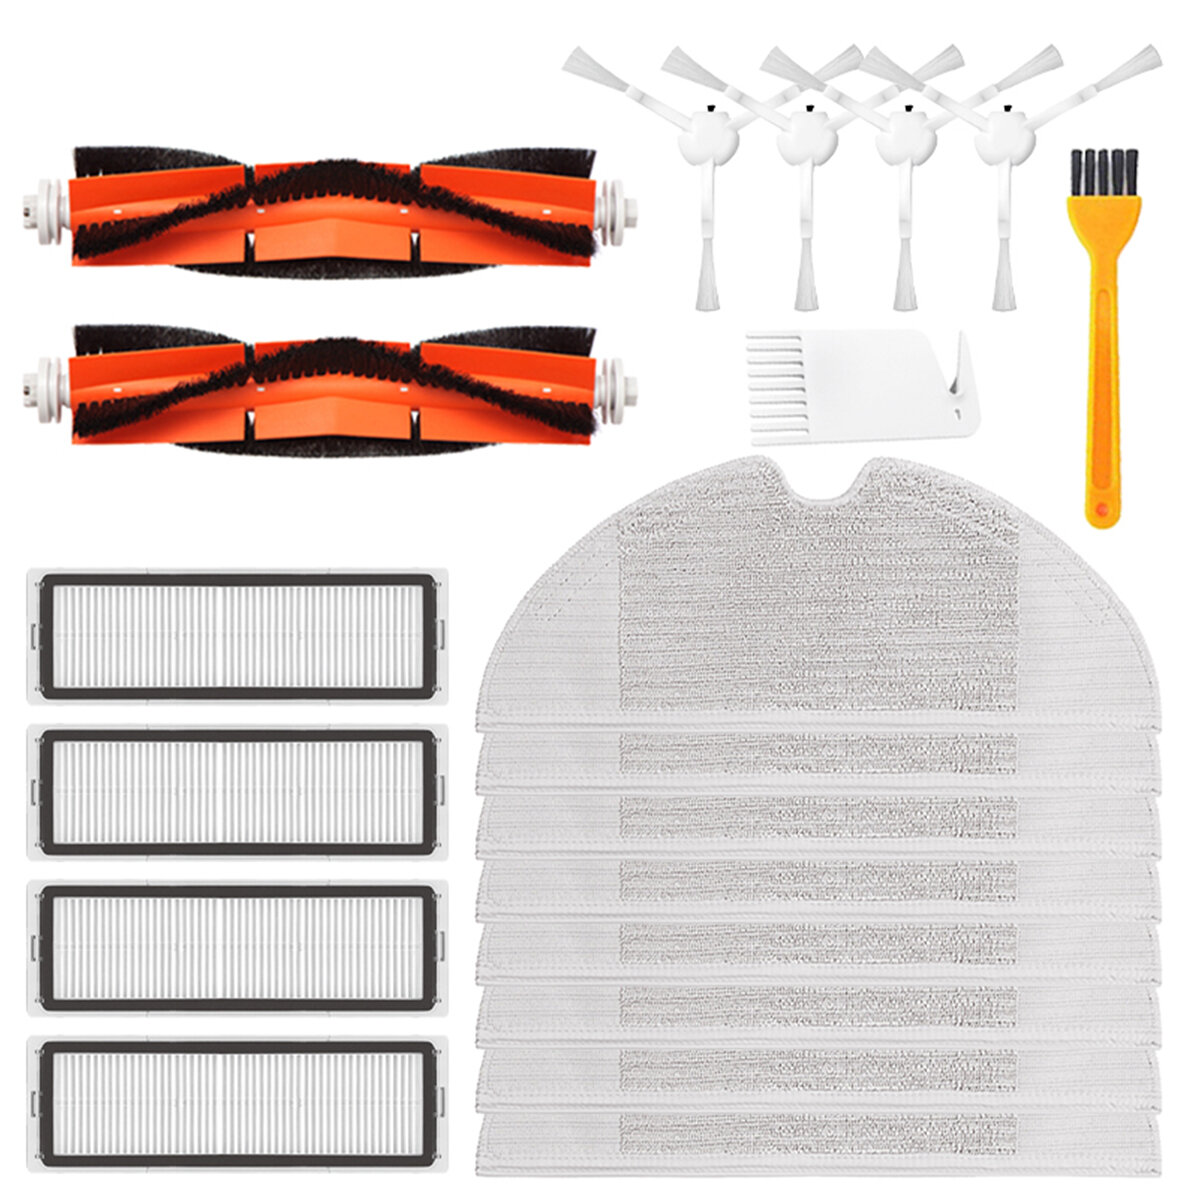 8pcs/14pcs/20pcs Replacement Kits for Xiaomi Mijia 1C STYTJ01ZHM Vacuum Cleaner Parts Accessories [N